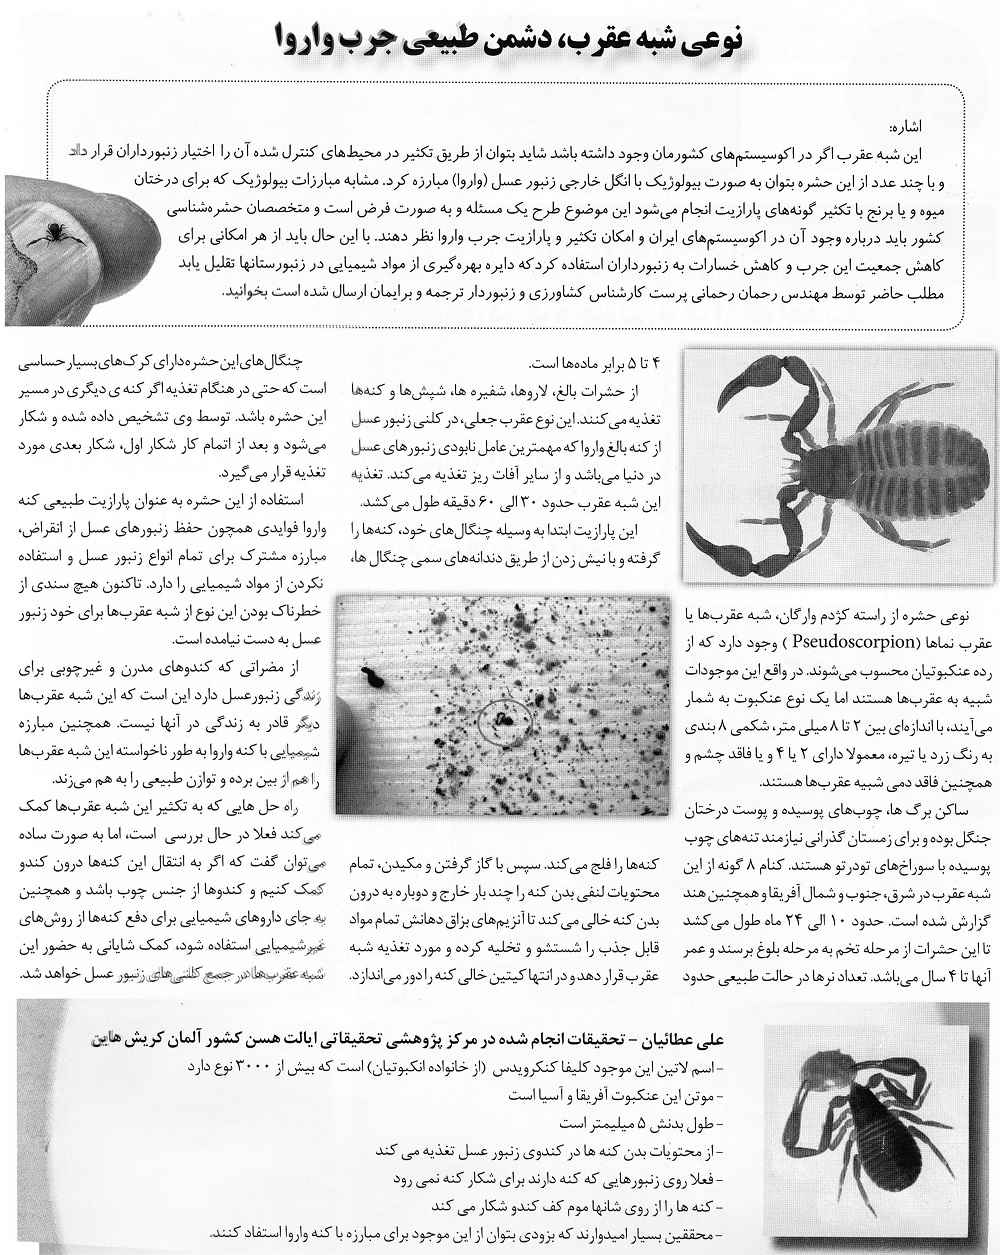 بازتاب این مطلب در مجله صنعت زنبورداری ایران